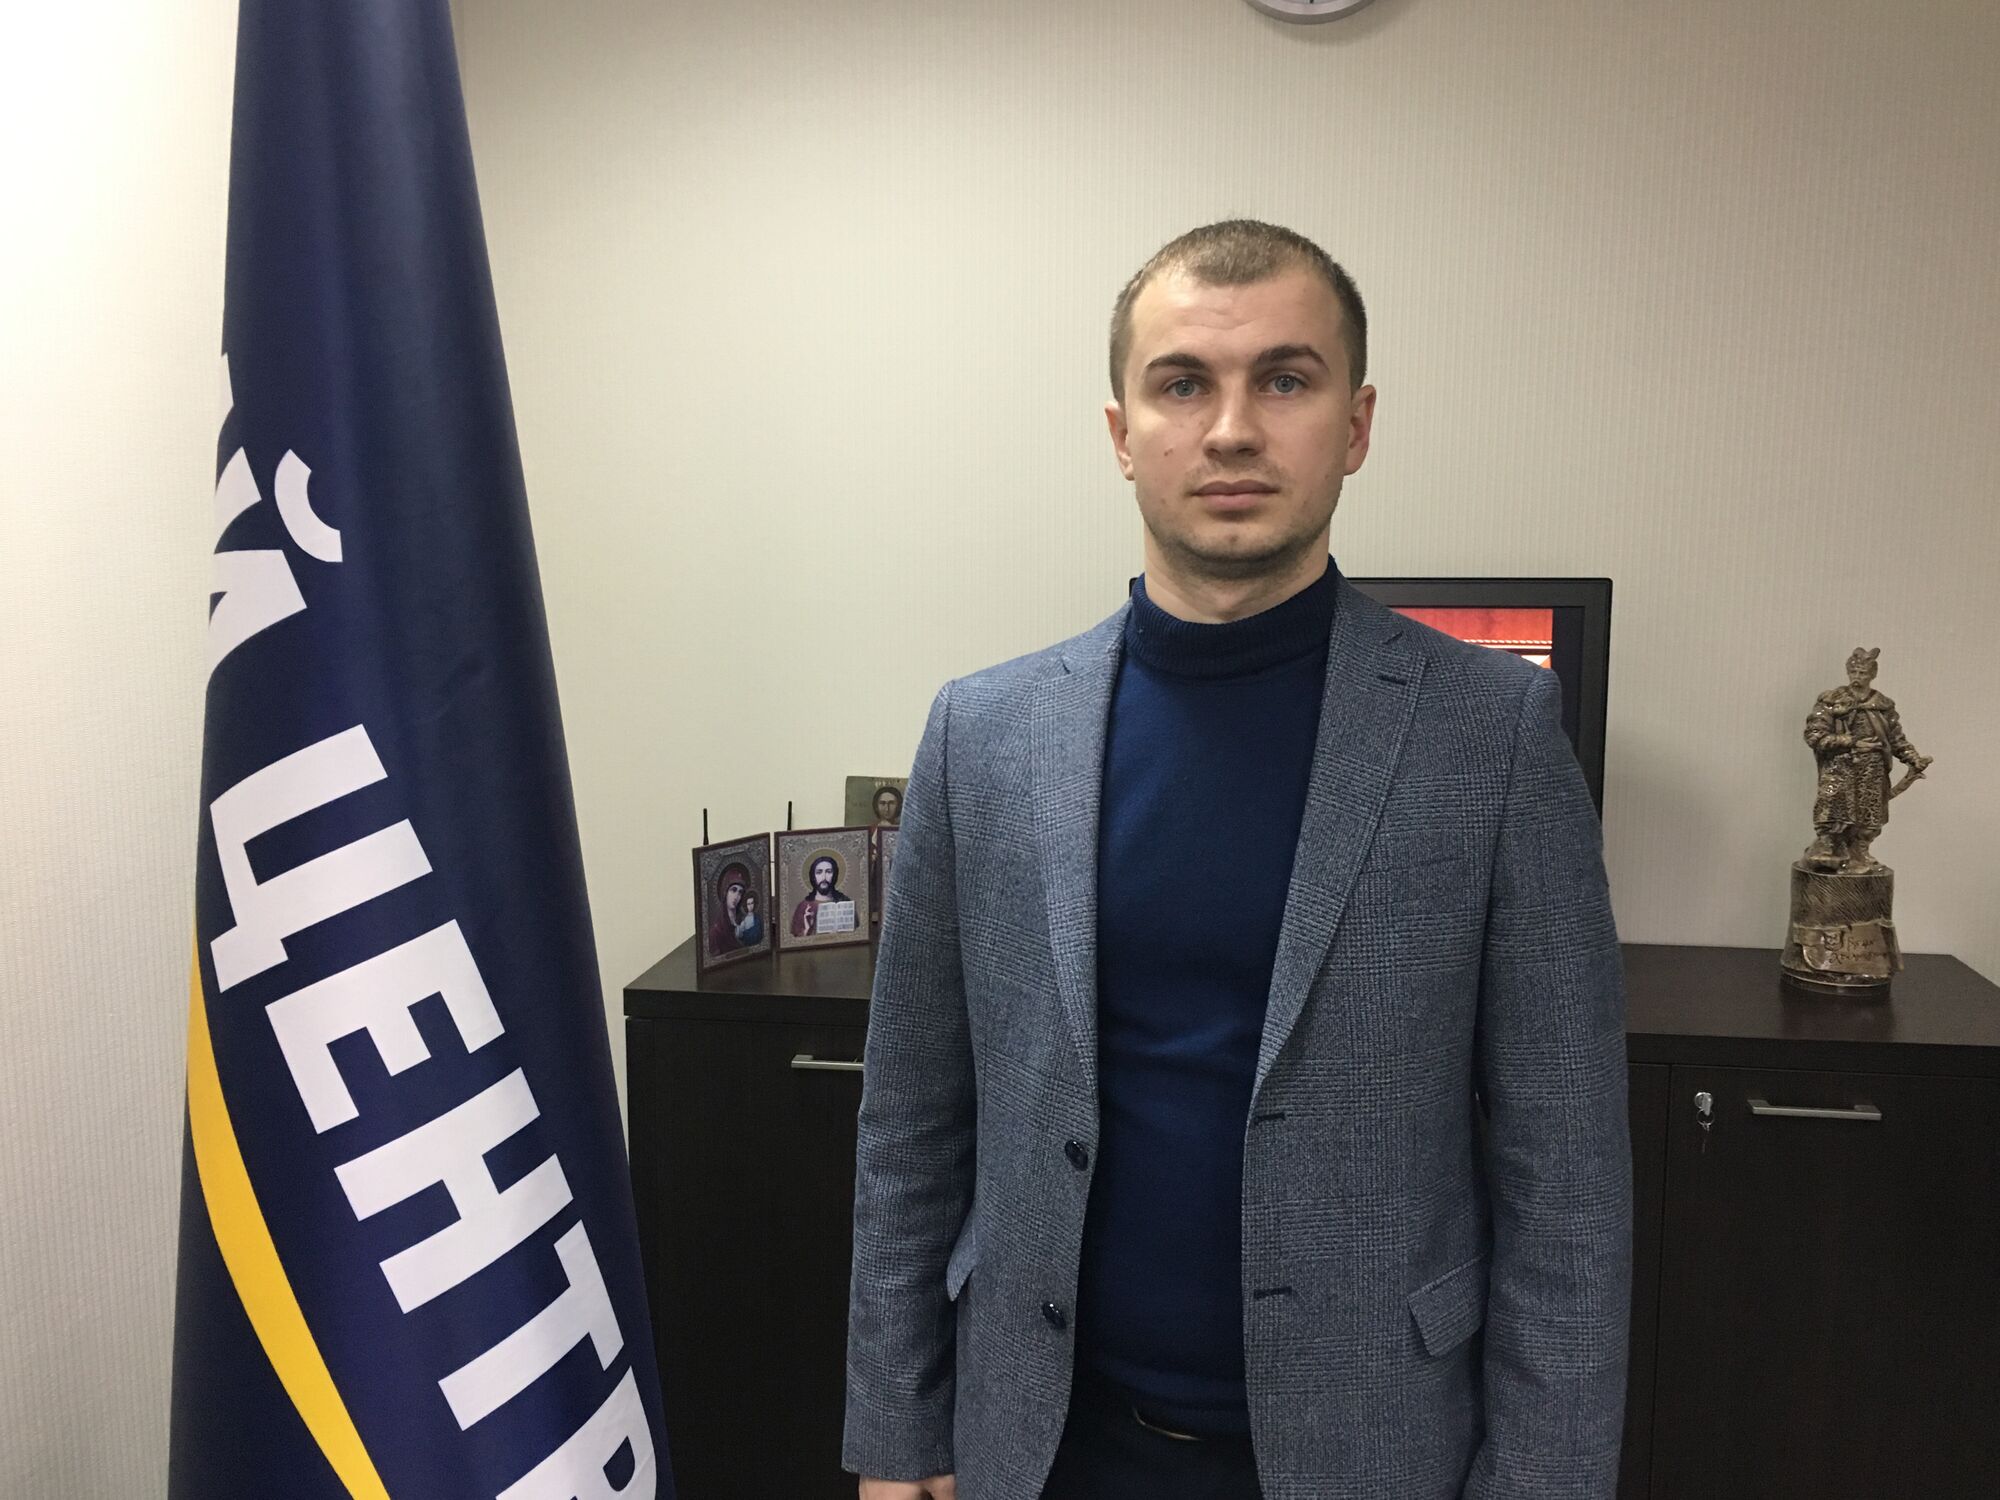 Руководителю партии "Единый Центр" на Луганщине принесли траурный венок